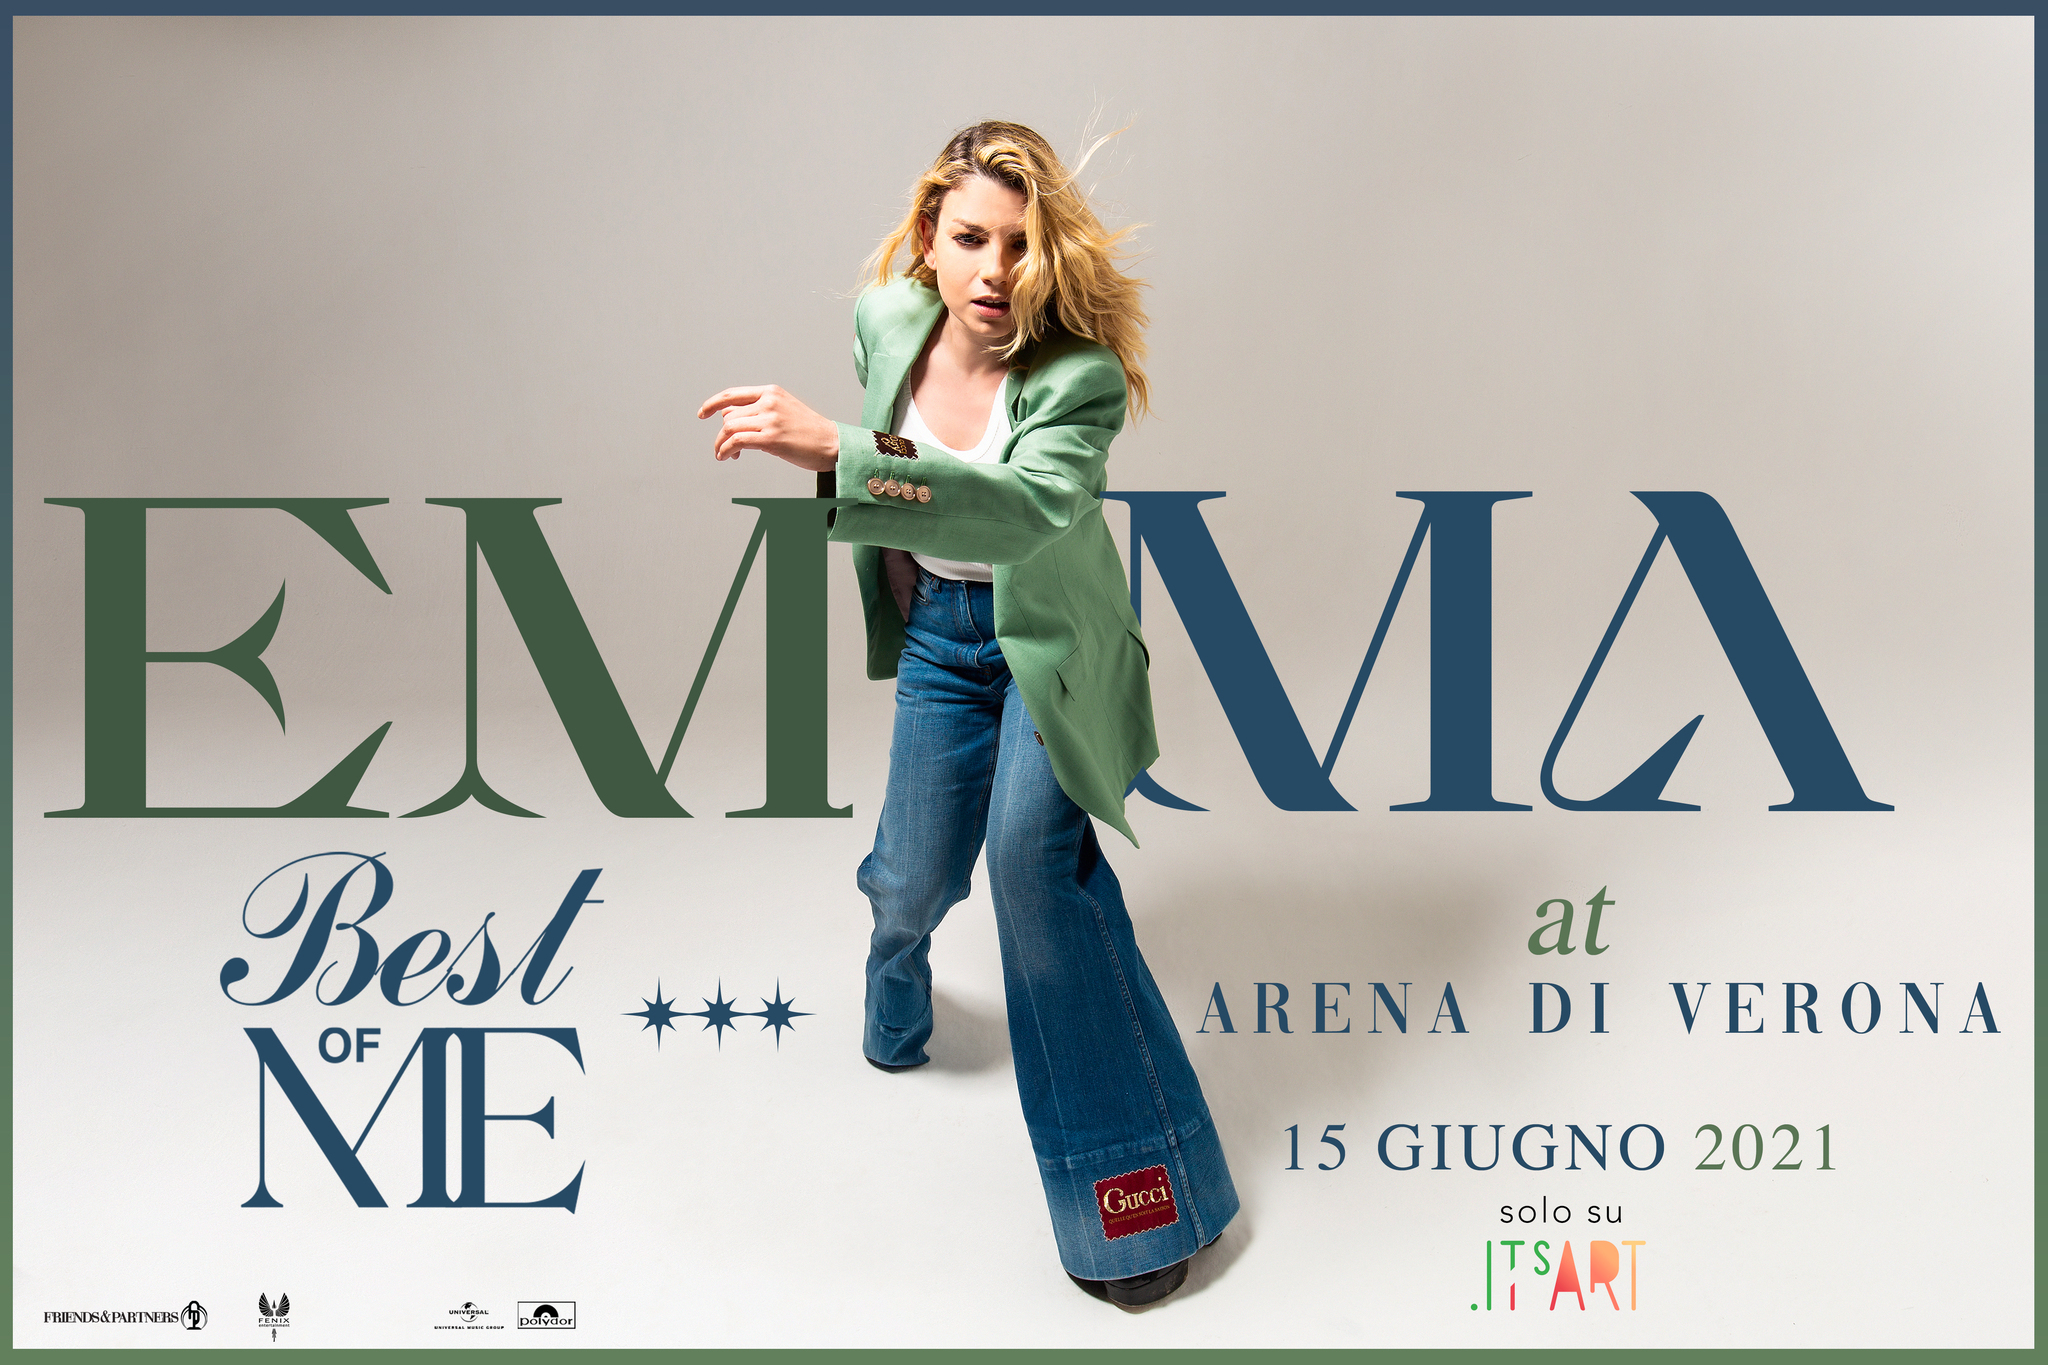 Emma Marrone in “Best of me at Arena di Verona”_un evento digital fruibile gratuitamente su Its’Art dal 15 giugno